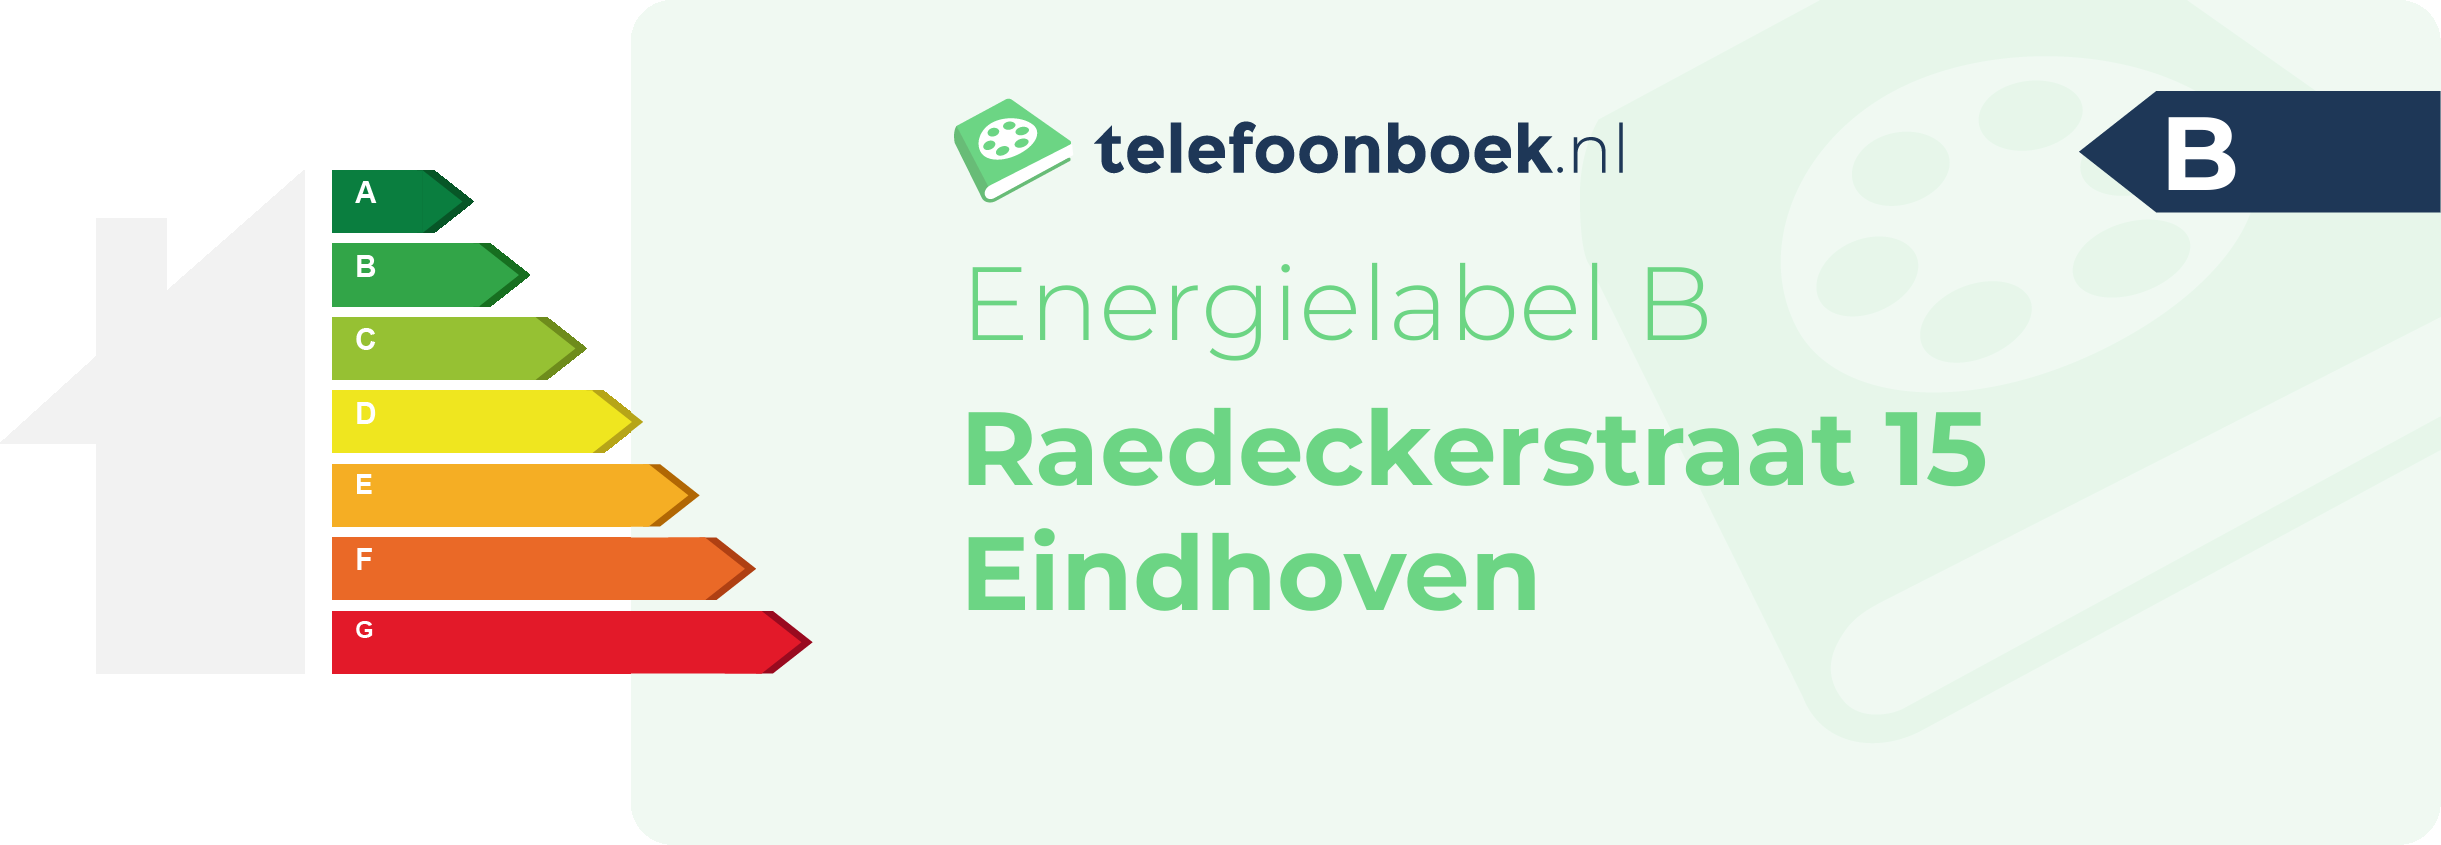 Energielabel Raedeckerstraat 15 Eindhoven